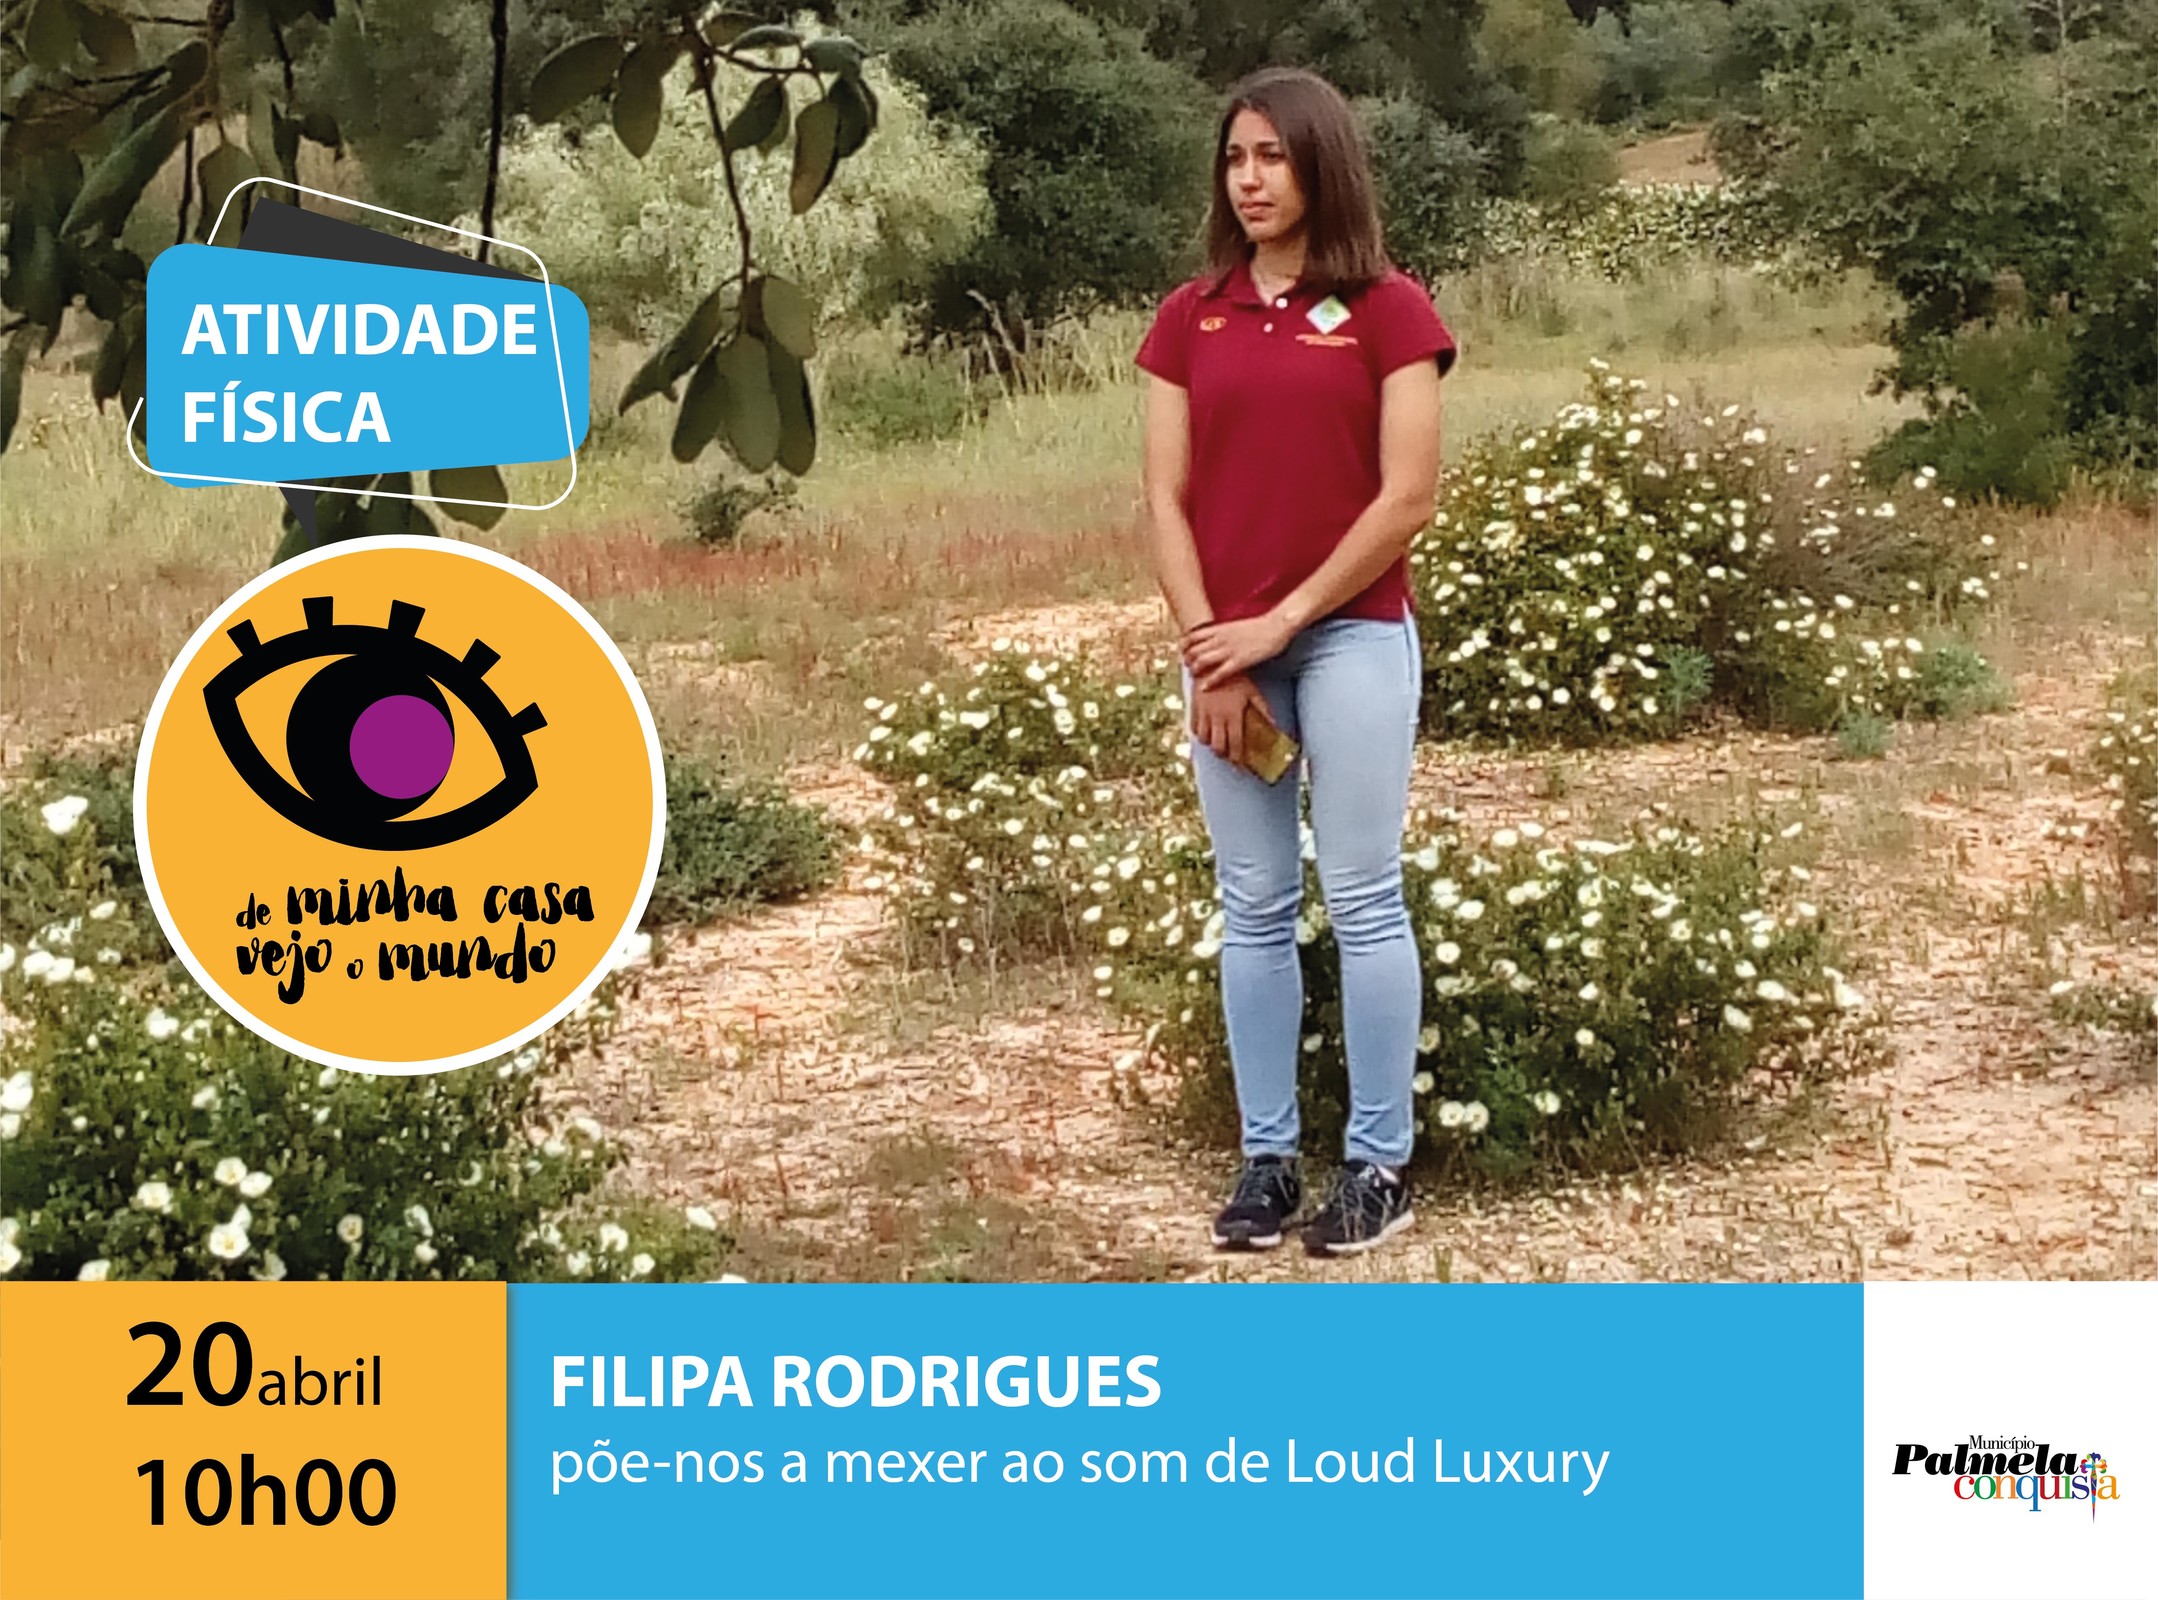 “De minha casa vejo o mundo”: siga as dicas de exercício de Ana Filipa Rodrigues!